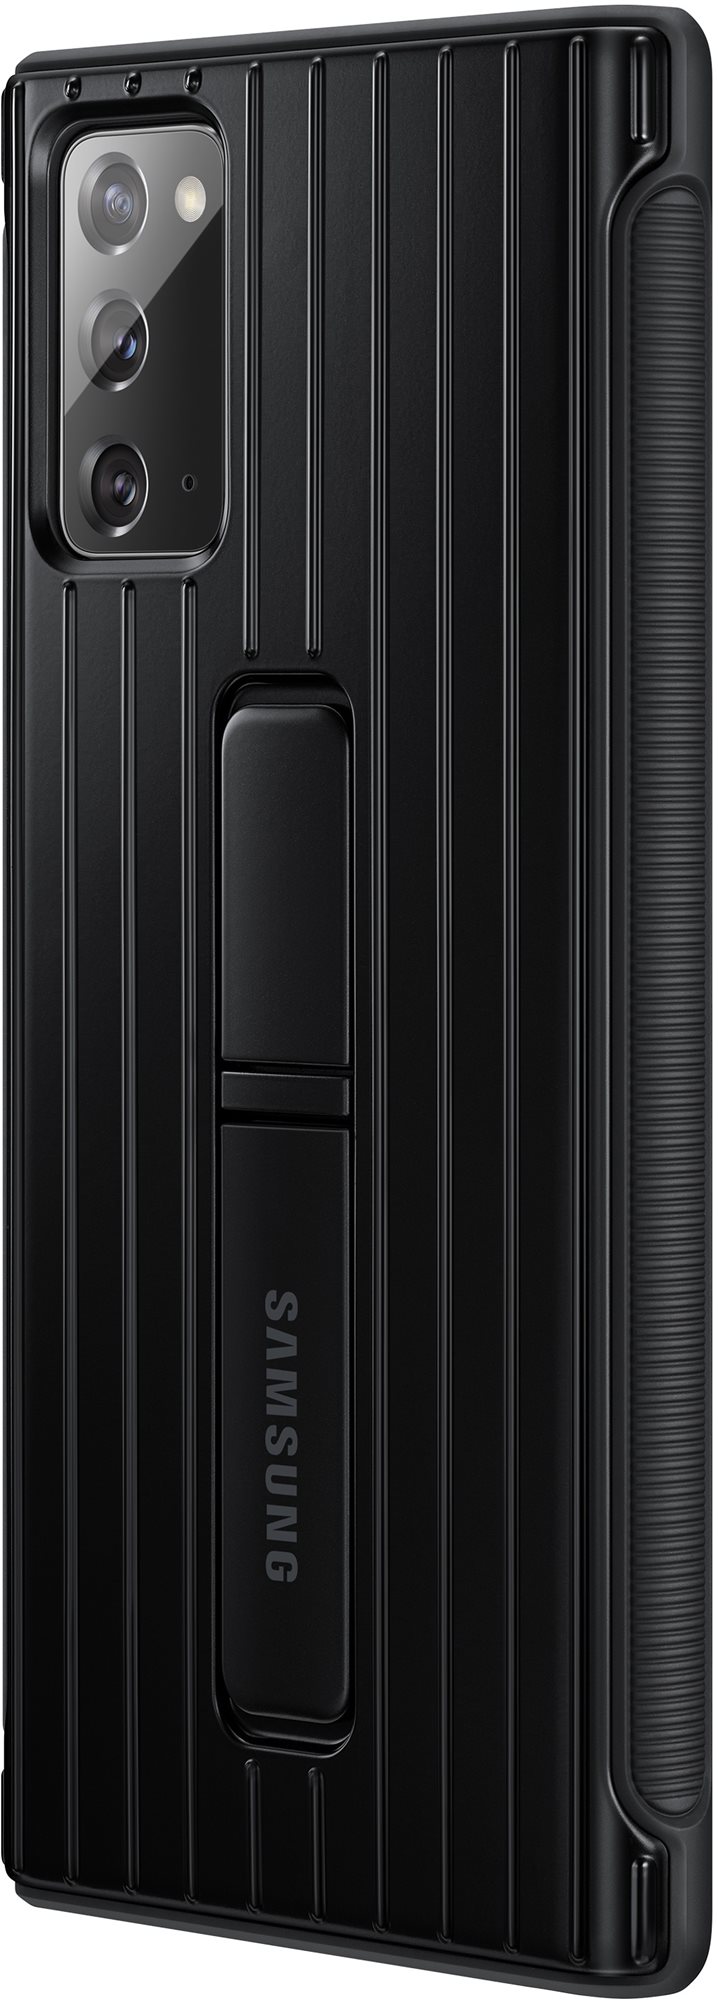 Samsung Galaxy Note20 fekete ütésálló állványos tok